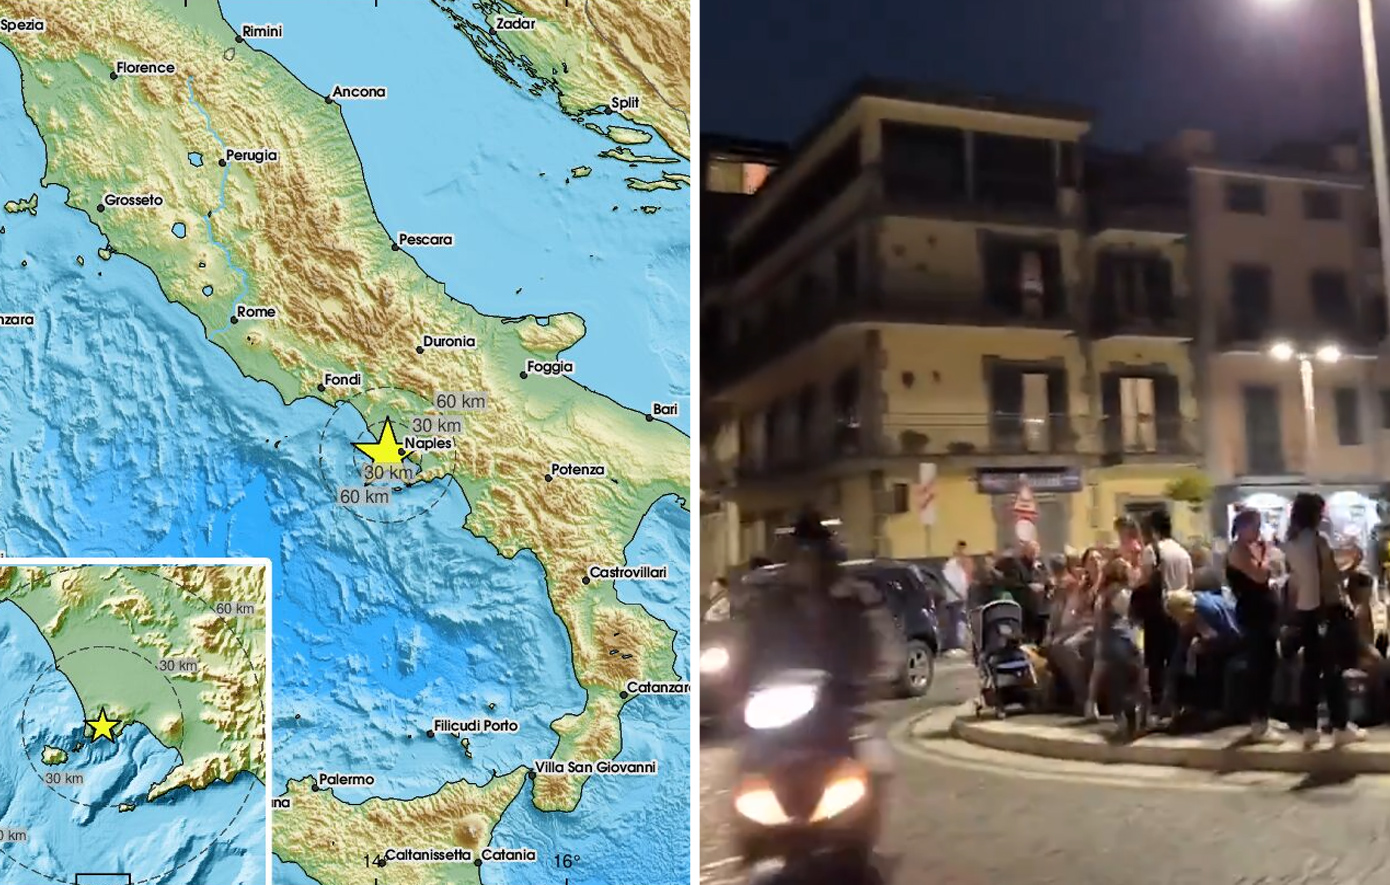 Σε πανικό οι κάτοικοι στη Νάπολη μετά το μπαράζ σεισμών κοντά σε ενεργό ηφαίστειο